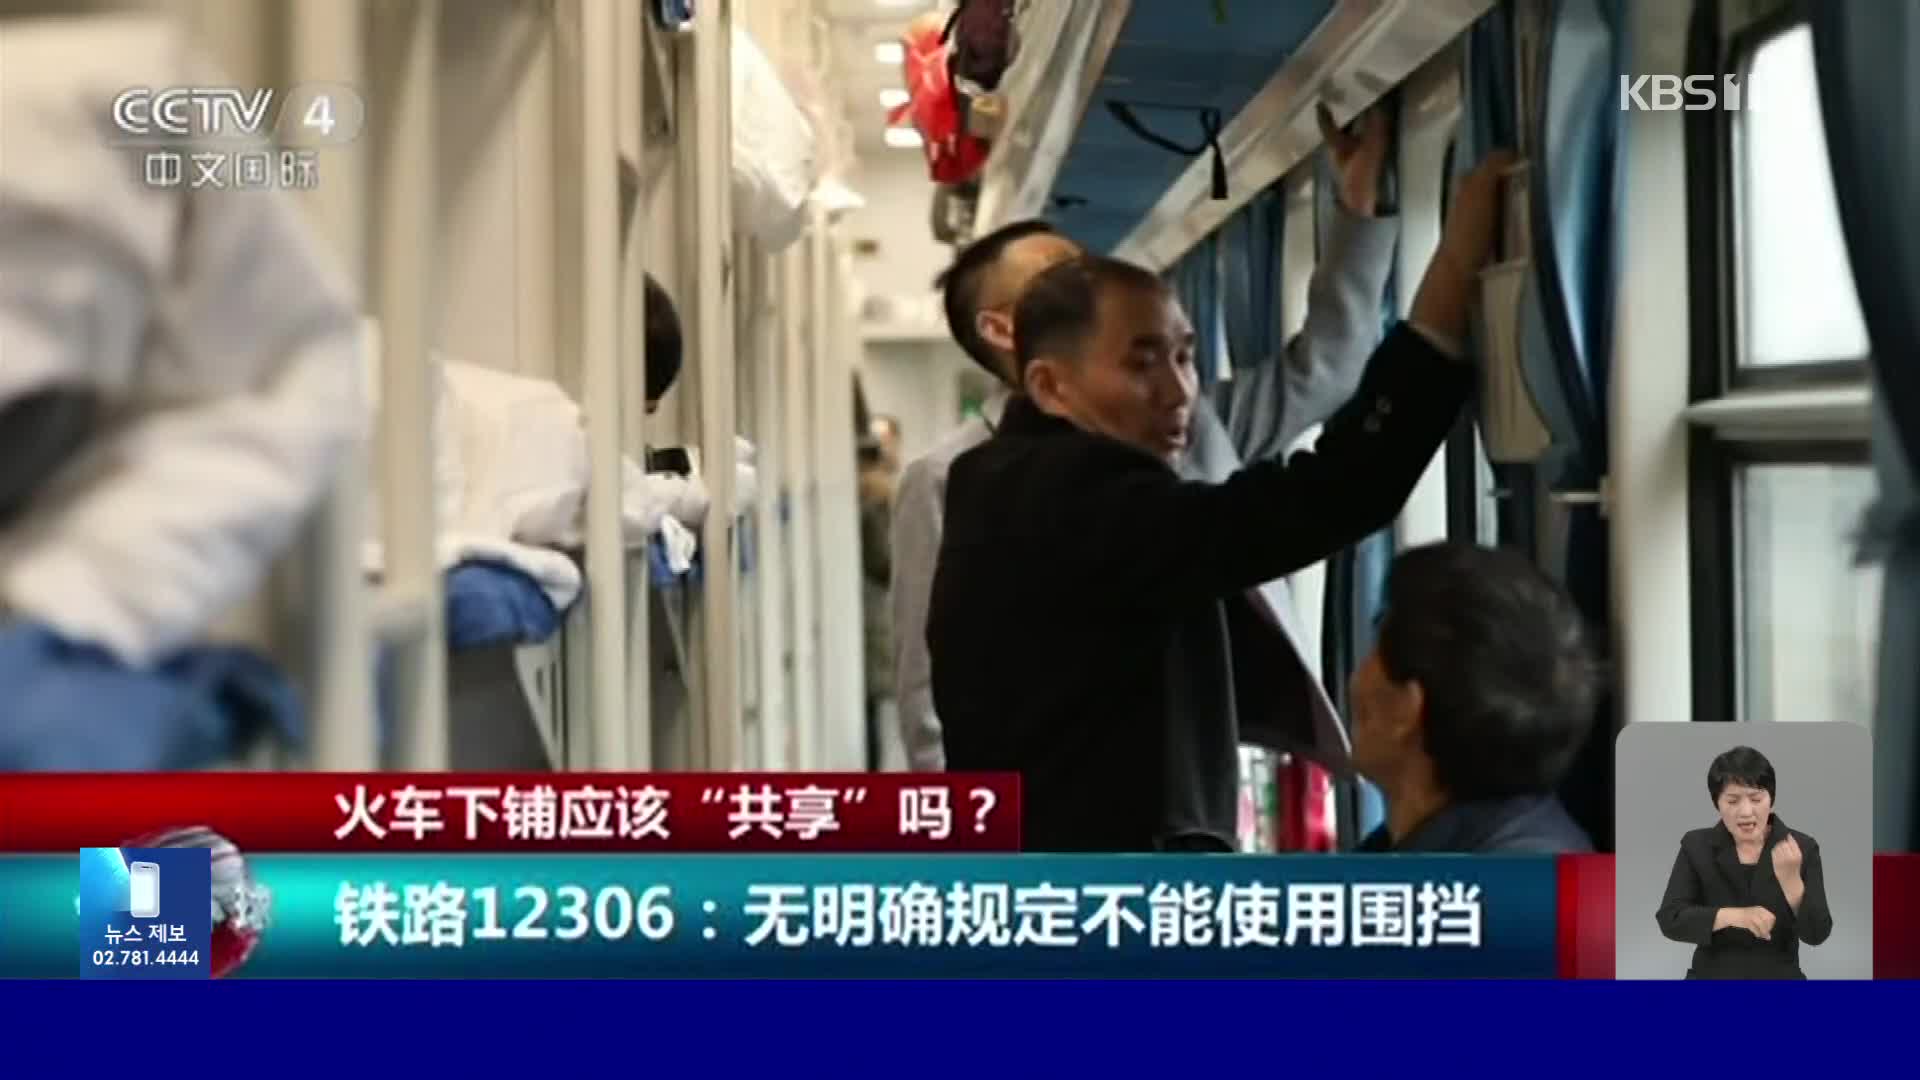 중국, 열차 침대칸 사용 두고 세대 갈등